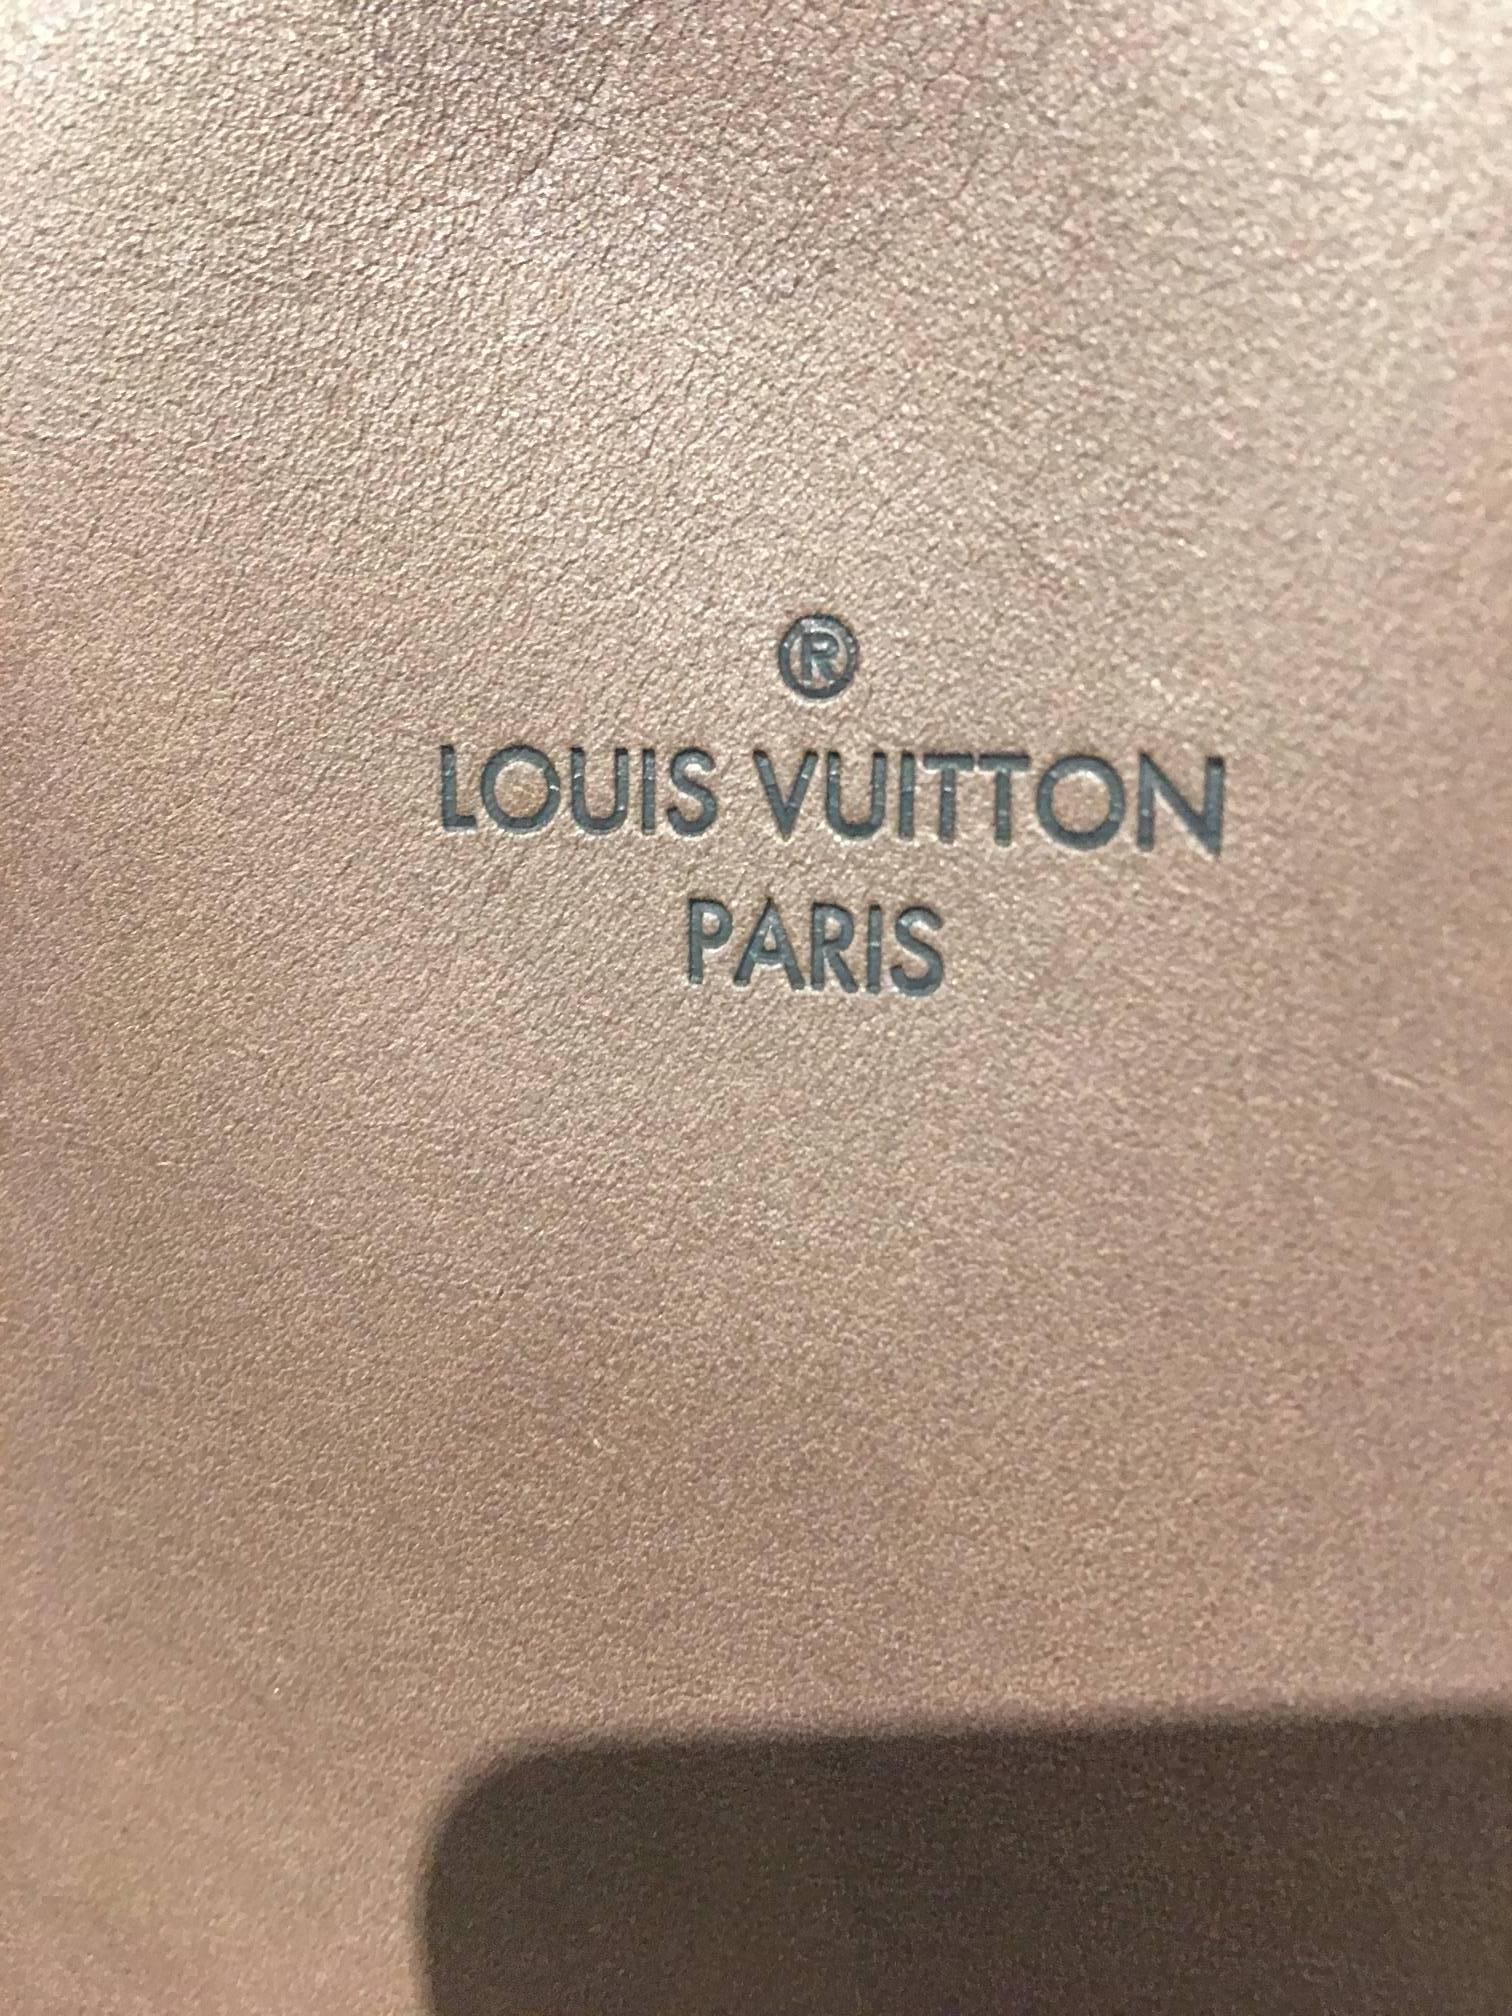 2013 Louis Vuitton W Bag GM Tote 1